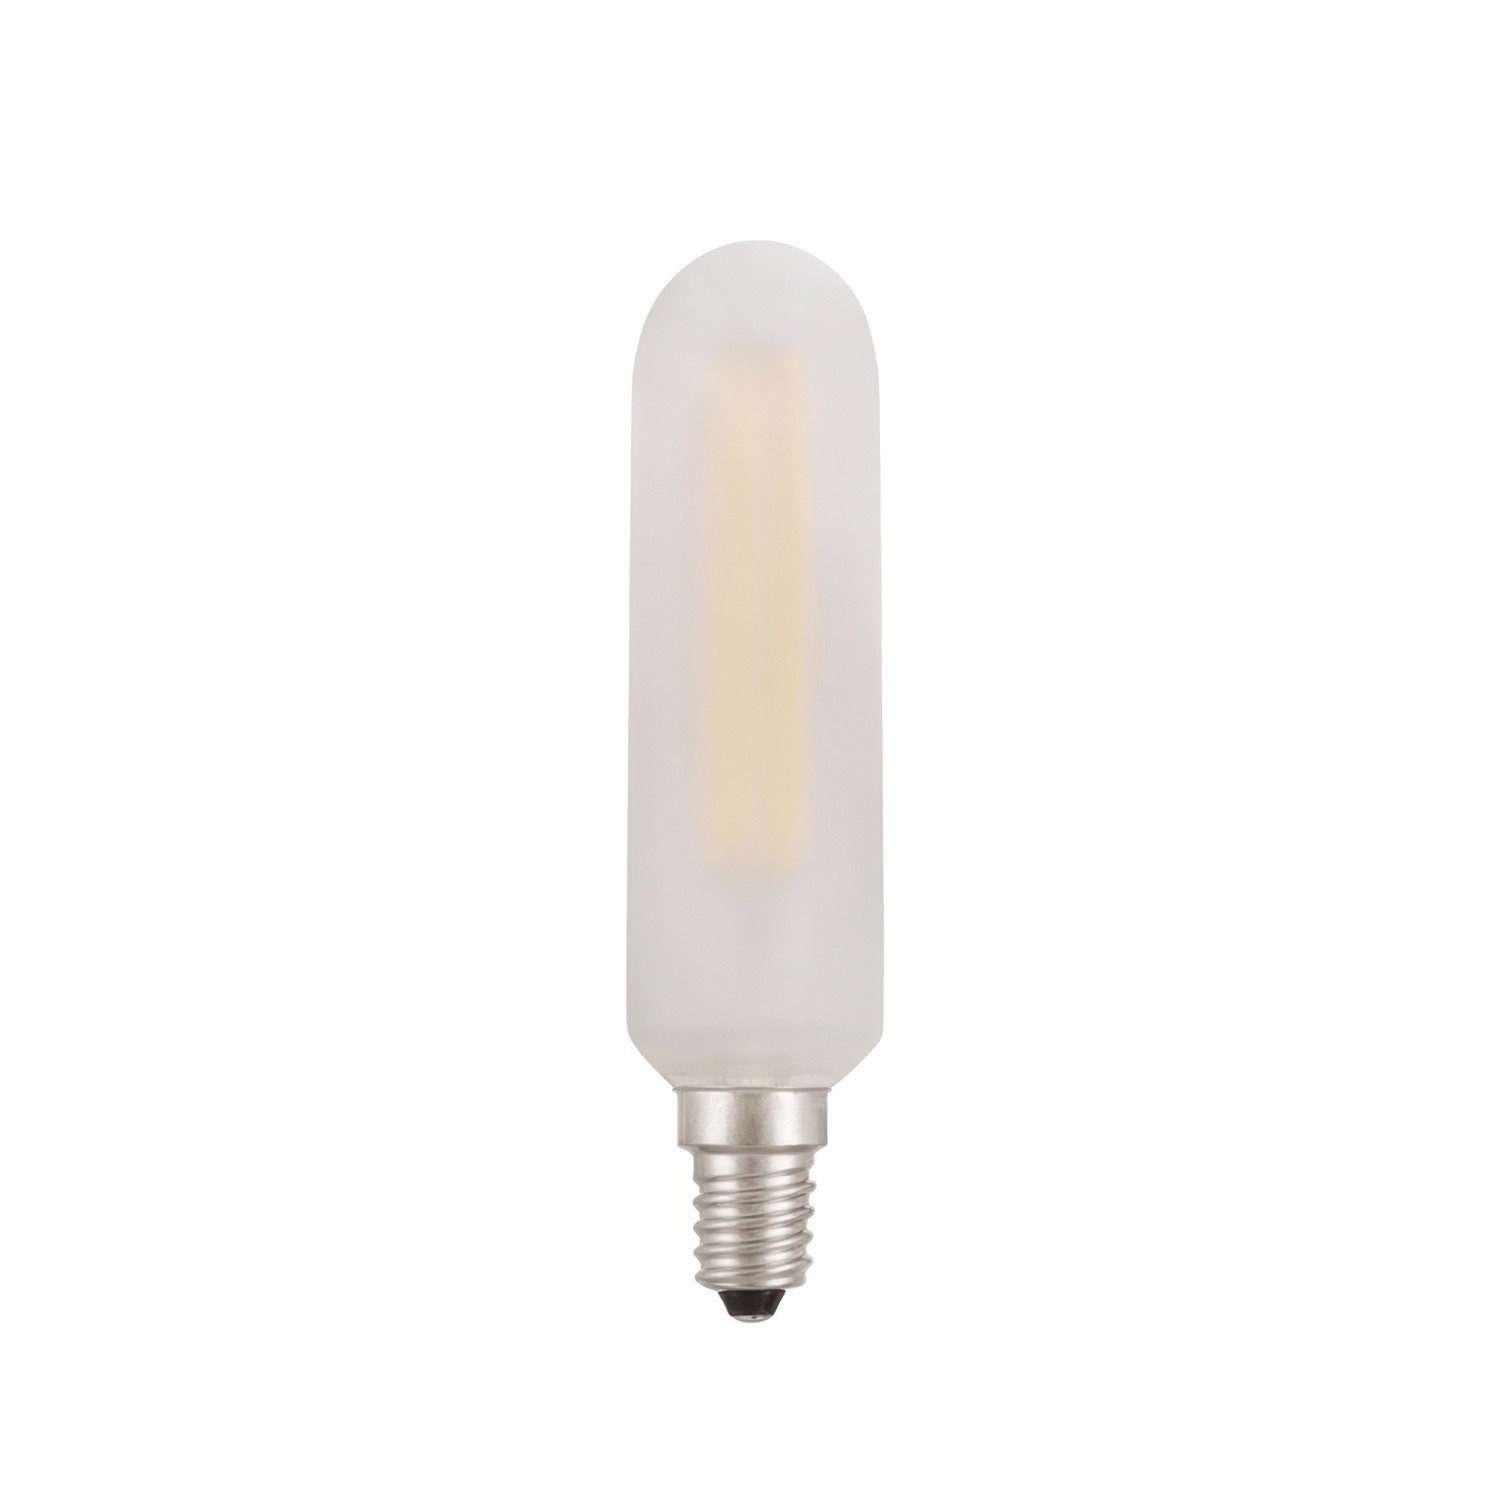 8 lichts-hanglamp voorzien van XXL rechthoekige Rose-One 675 mm compleet met strijkijzersnoer en metalen afwerking